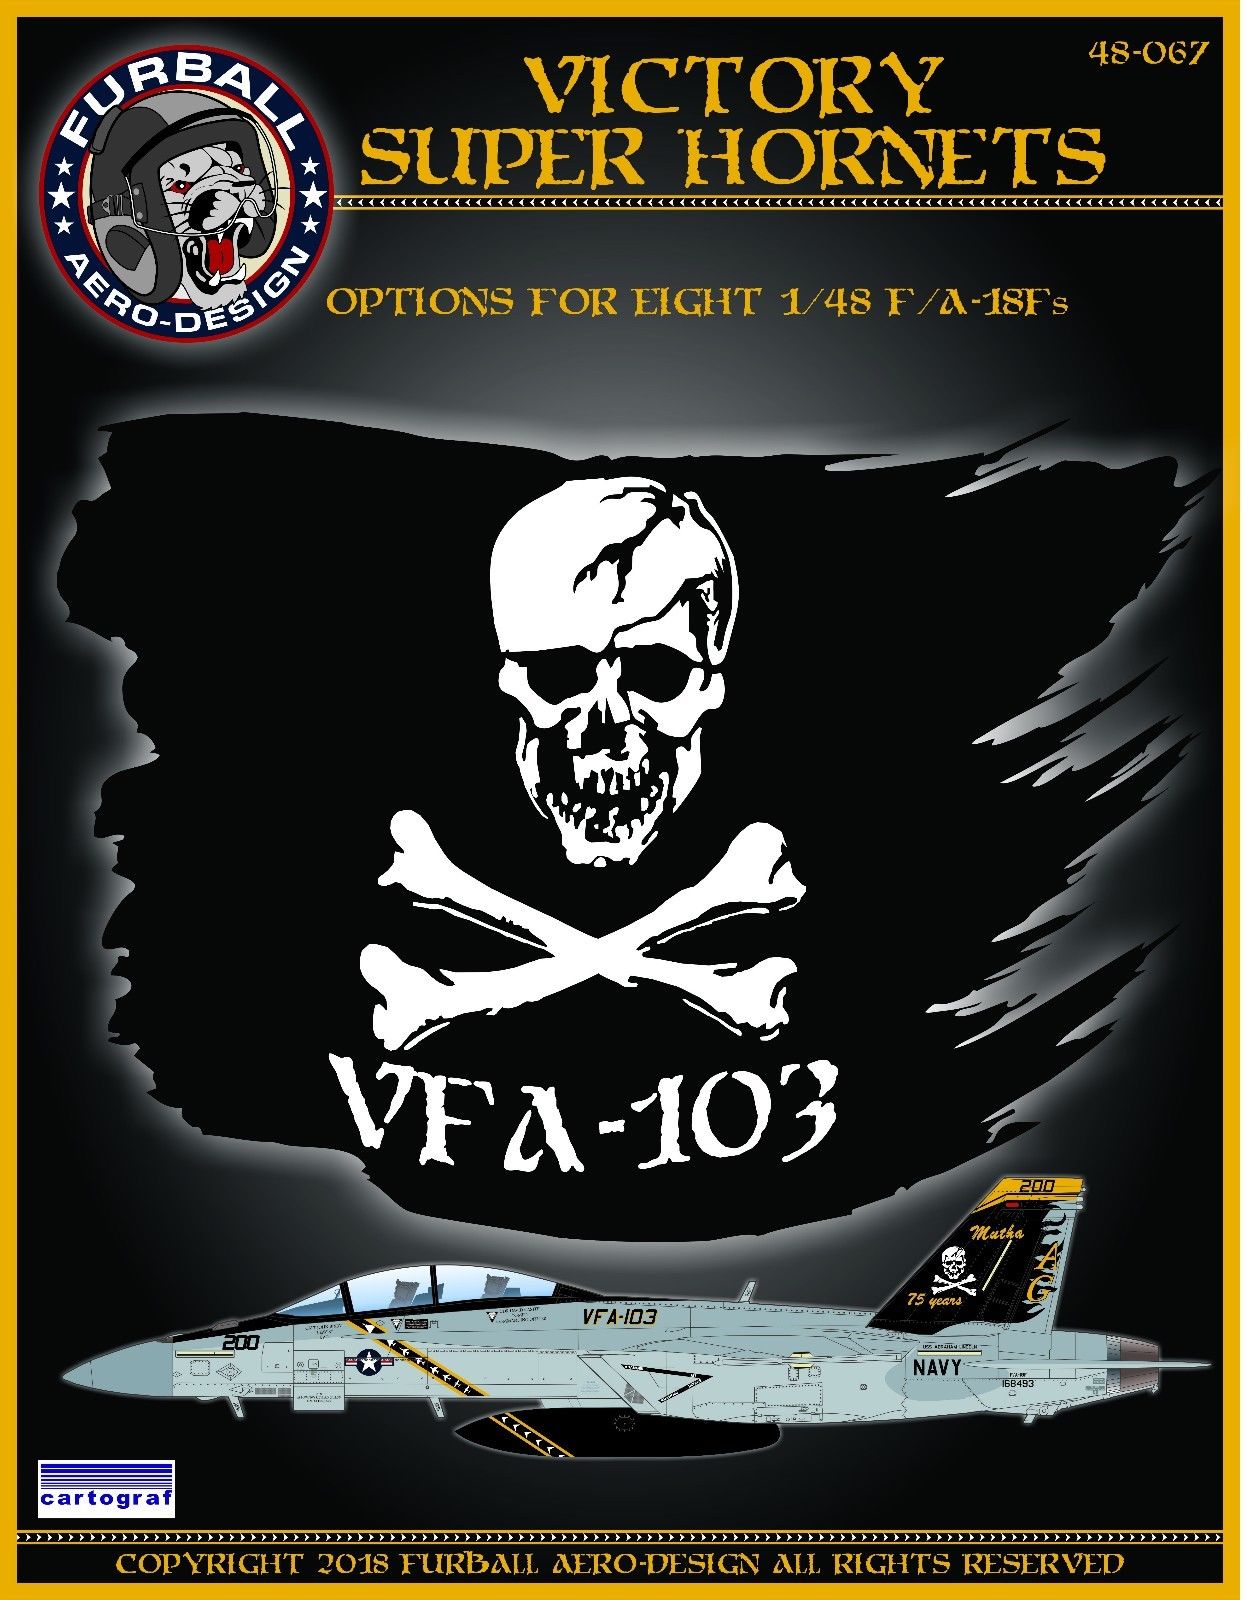 1/48 F/A-18F 超级大黄蜂战斗机"VFA-103骷髅中队胜利者"